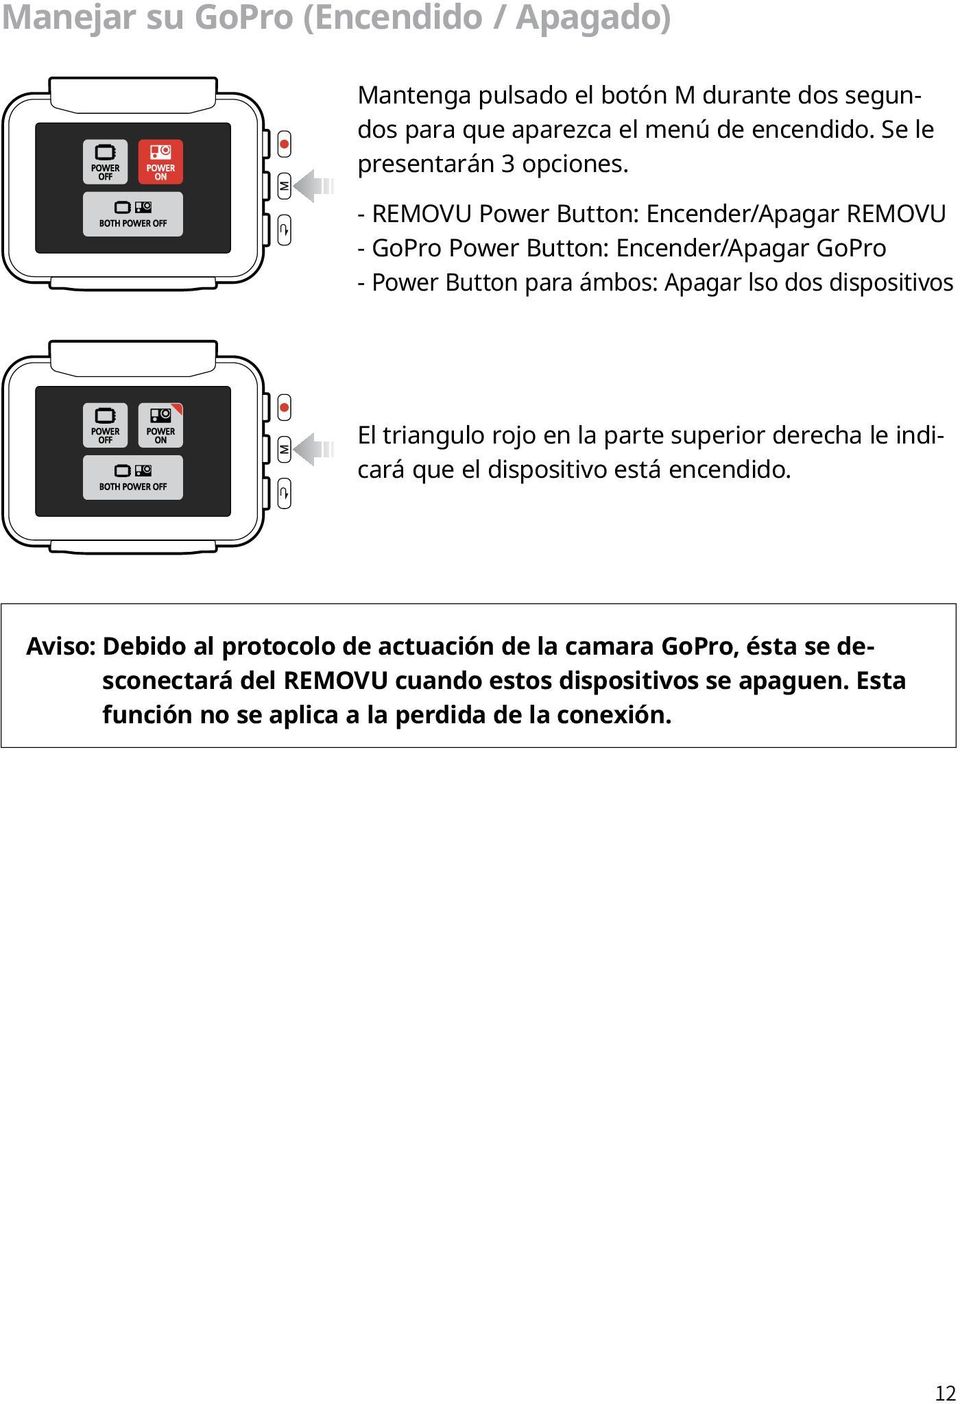 - REMOVU Power Button: Encender/Apagar REMOVU - GoPro Power Button: Encender/Apagar GoPro - Power Button para ámbos: Apagar lso dos dispositivos